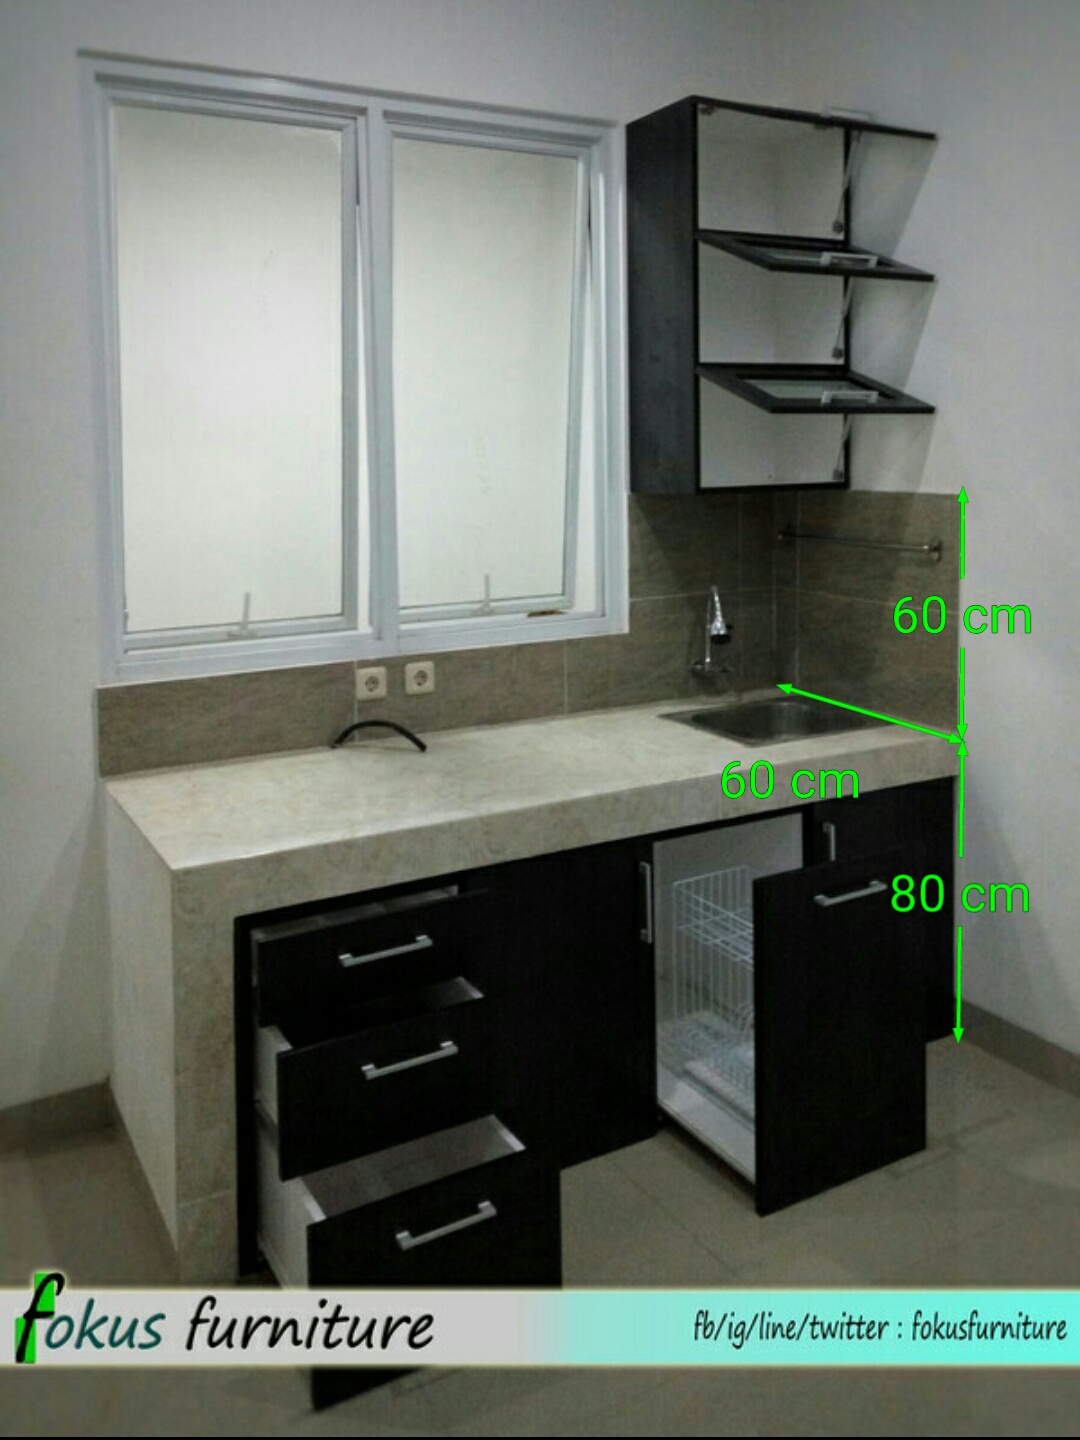  Ukuran kitchen set 